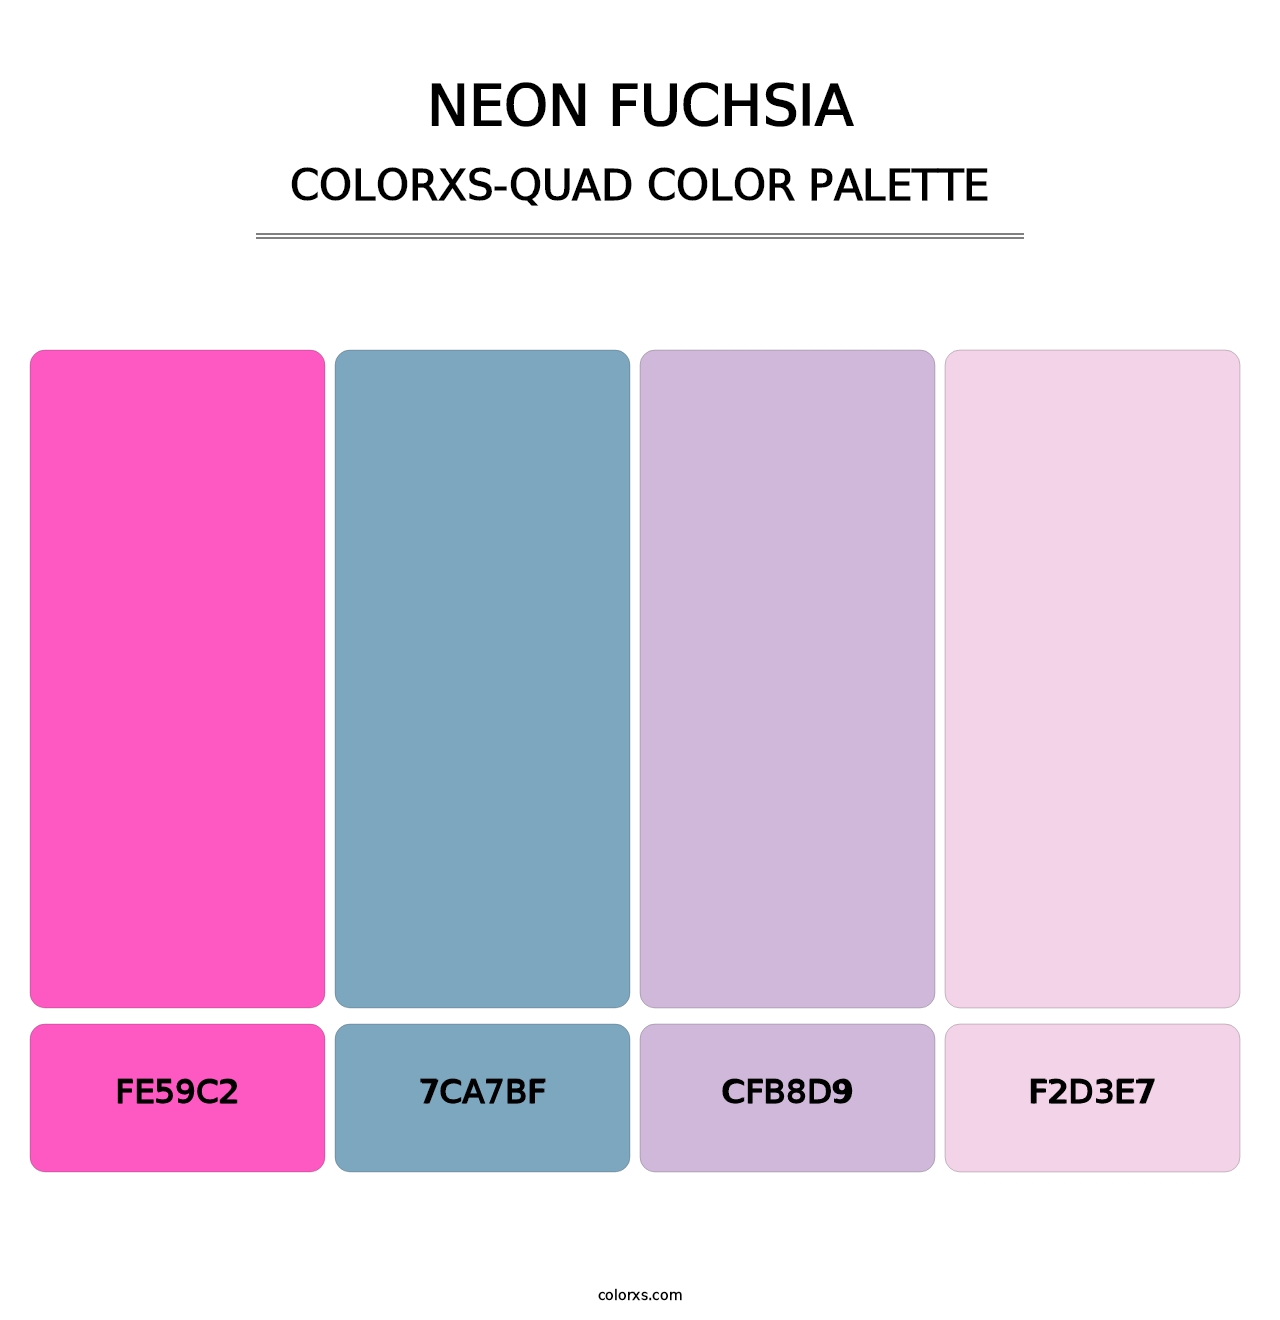 Neon Fuchsia - Colorxs Quad Palette